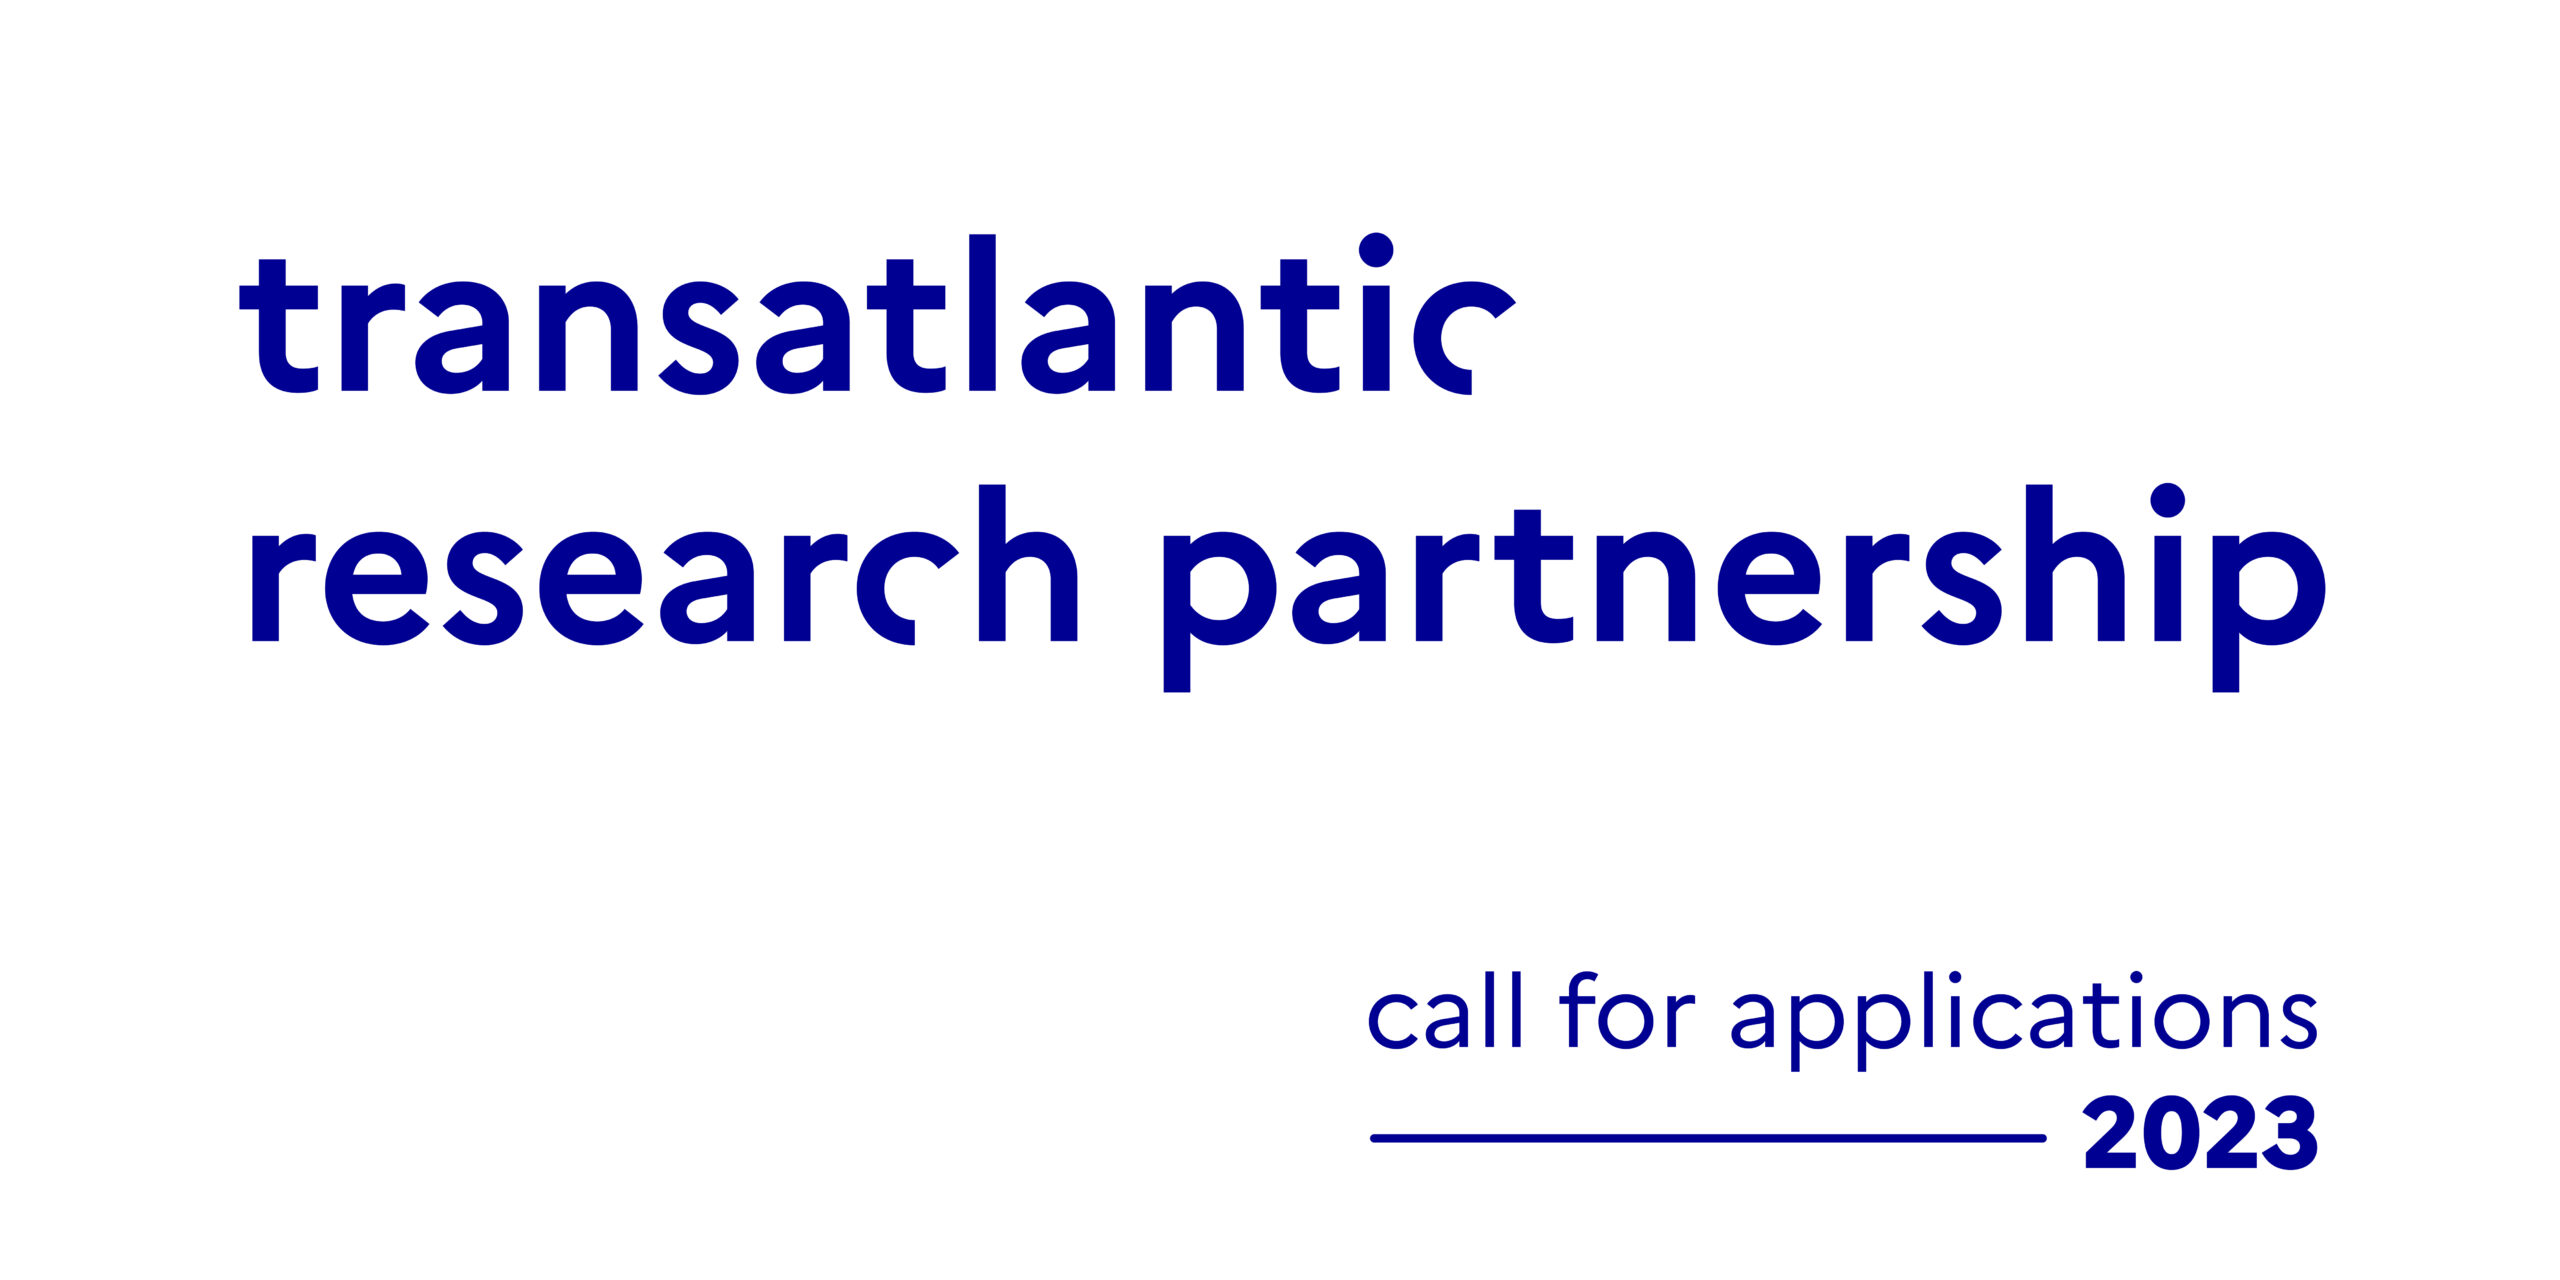 L’appel à candidatures pour le Transatlantic Research Partnership 2023 est ouvert